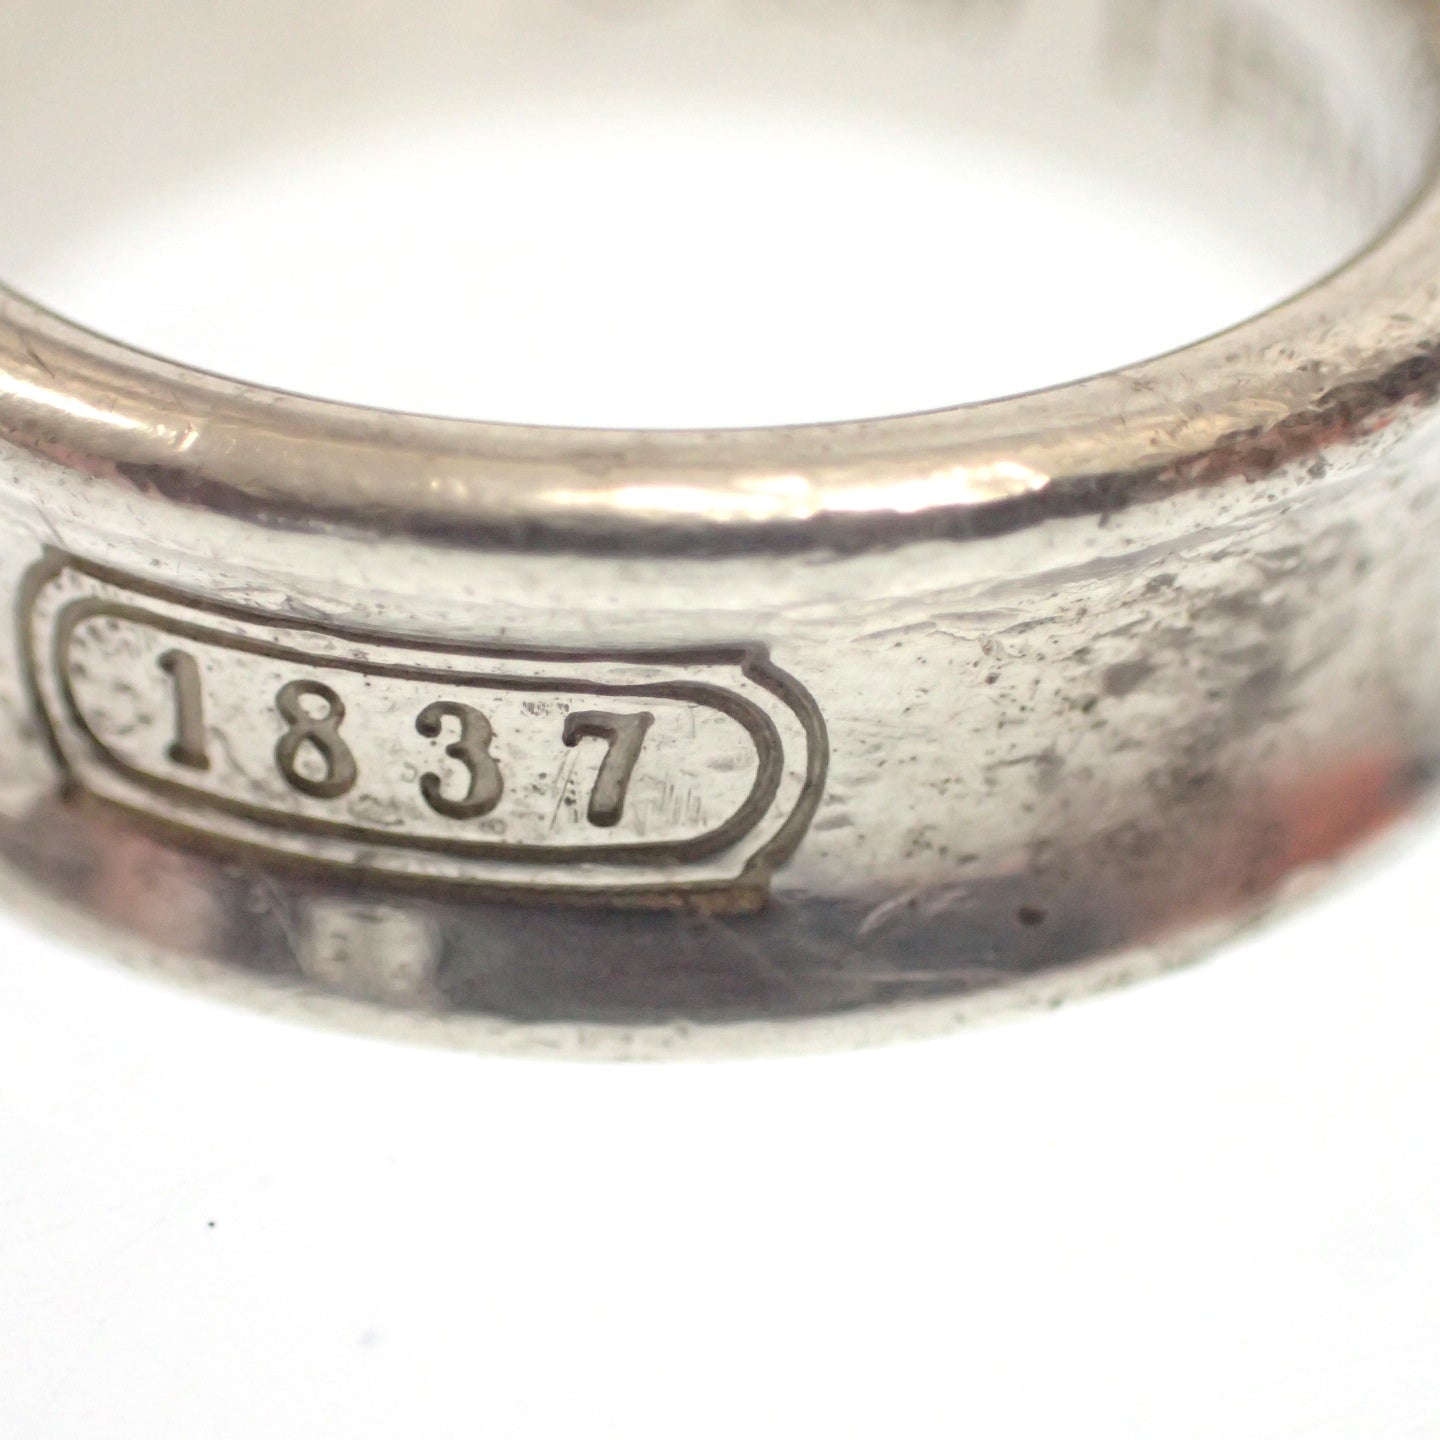 二手 Tiffany 1837 戒指 窄戒指 SV925 银 Tiffany &amp; Co. [LA] 